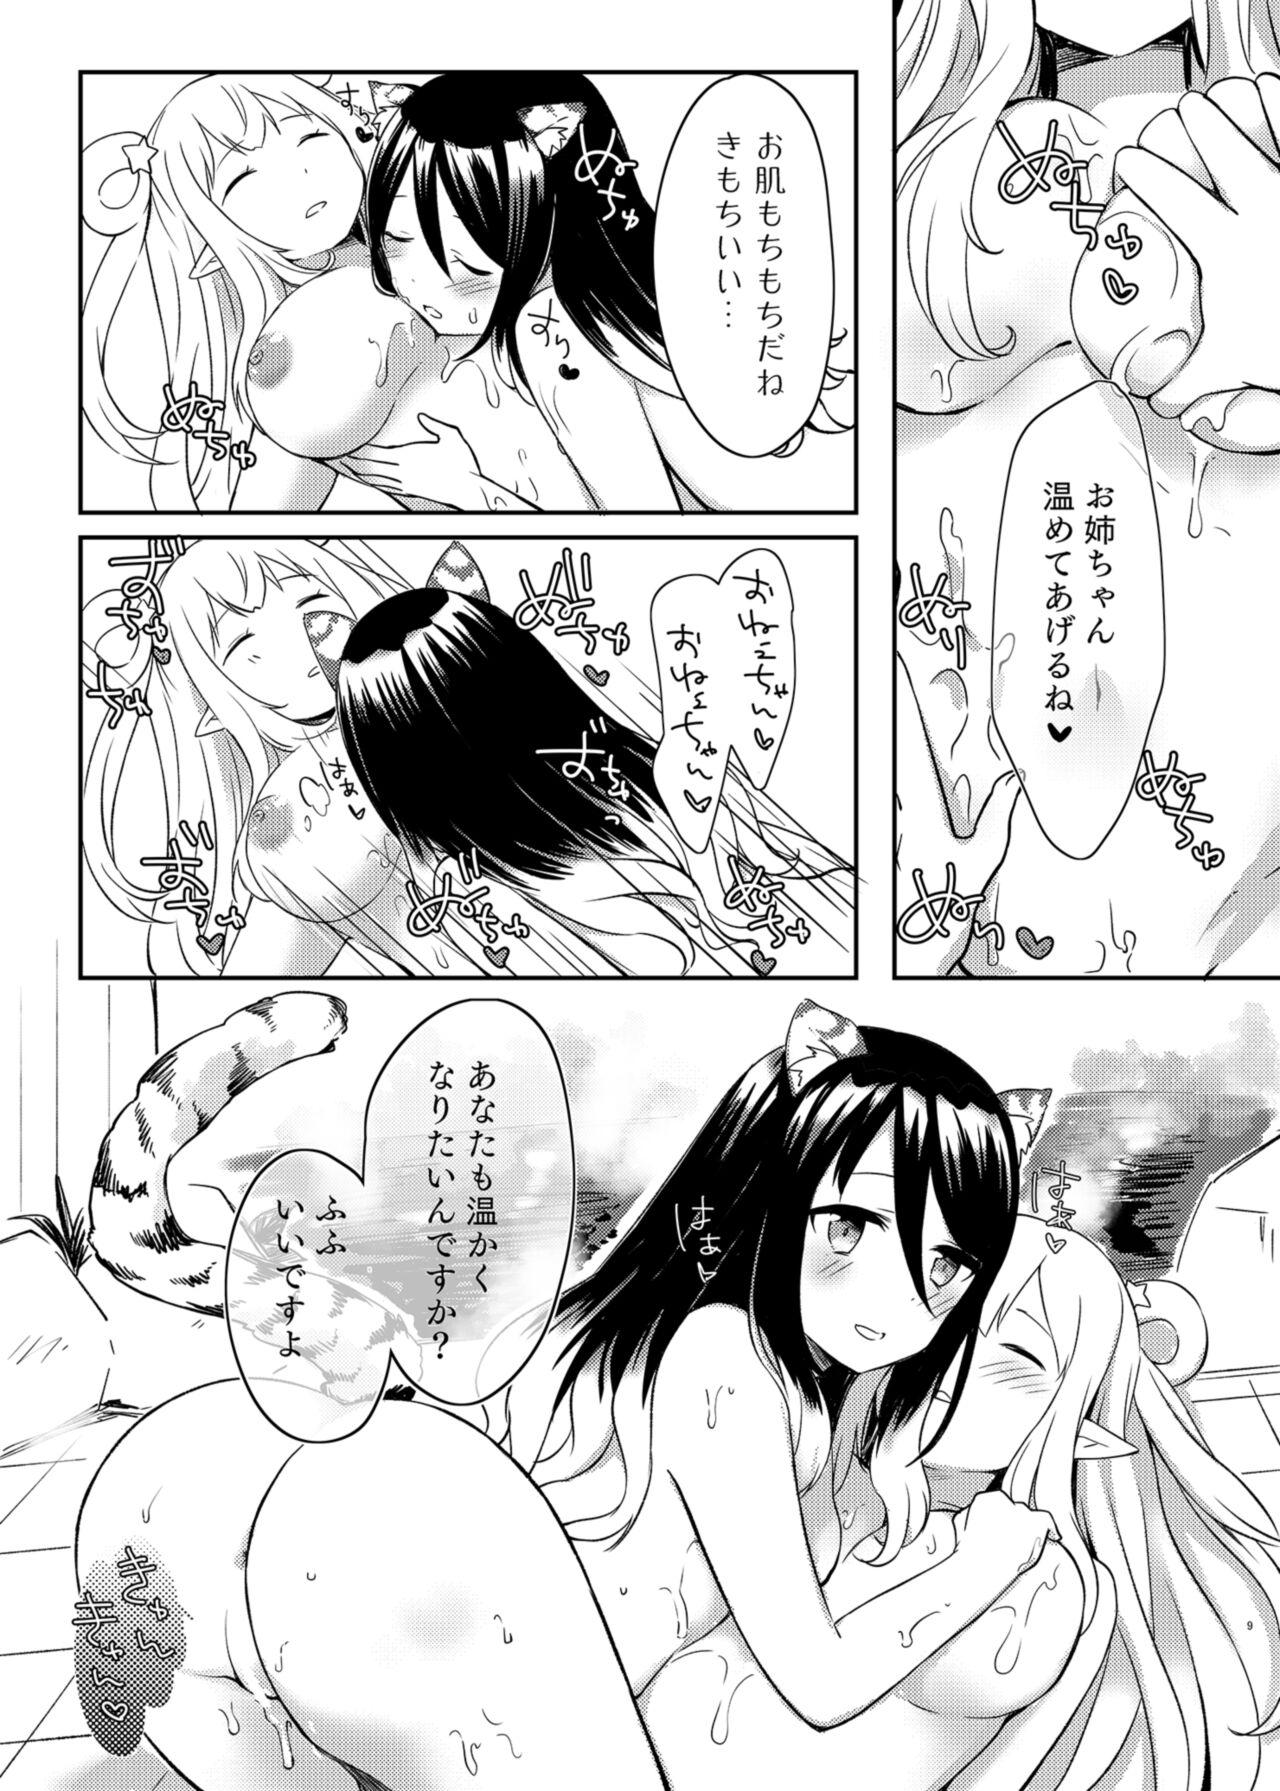 Fitness Hatsune to Shiori no Yukemuri Daisakusen - Princess connect Fingering - Page 9